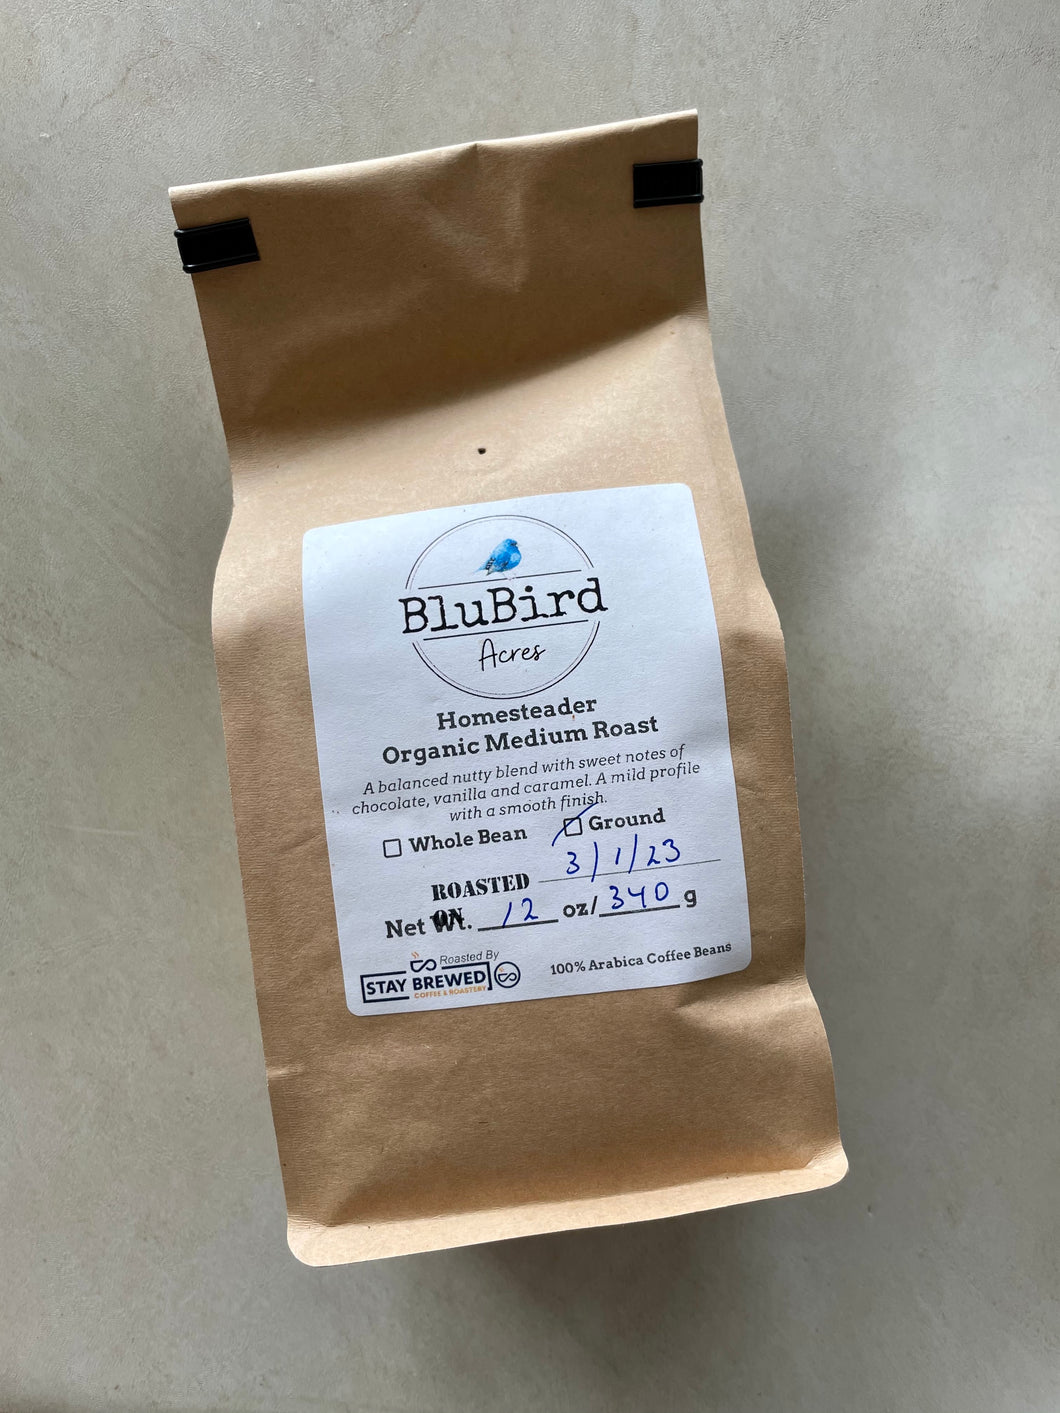 Homesteader - Organic Medium Roast Coffee